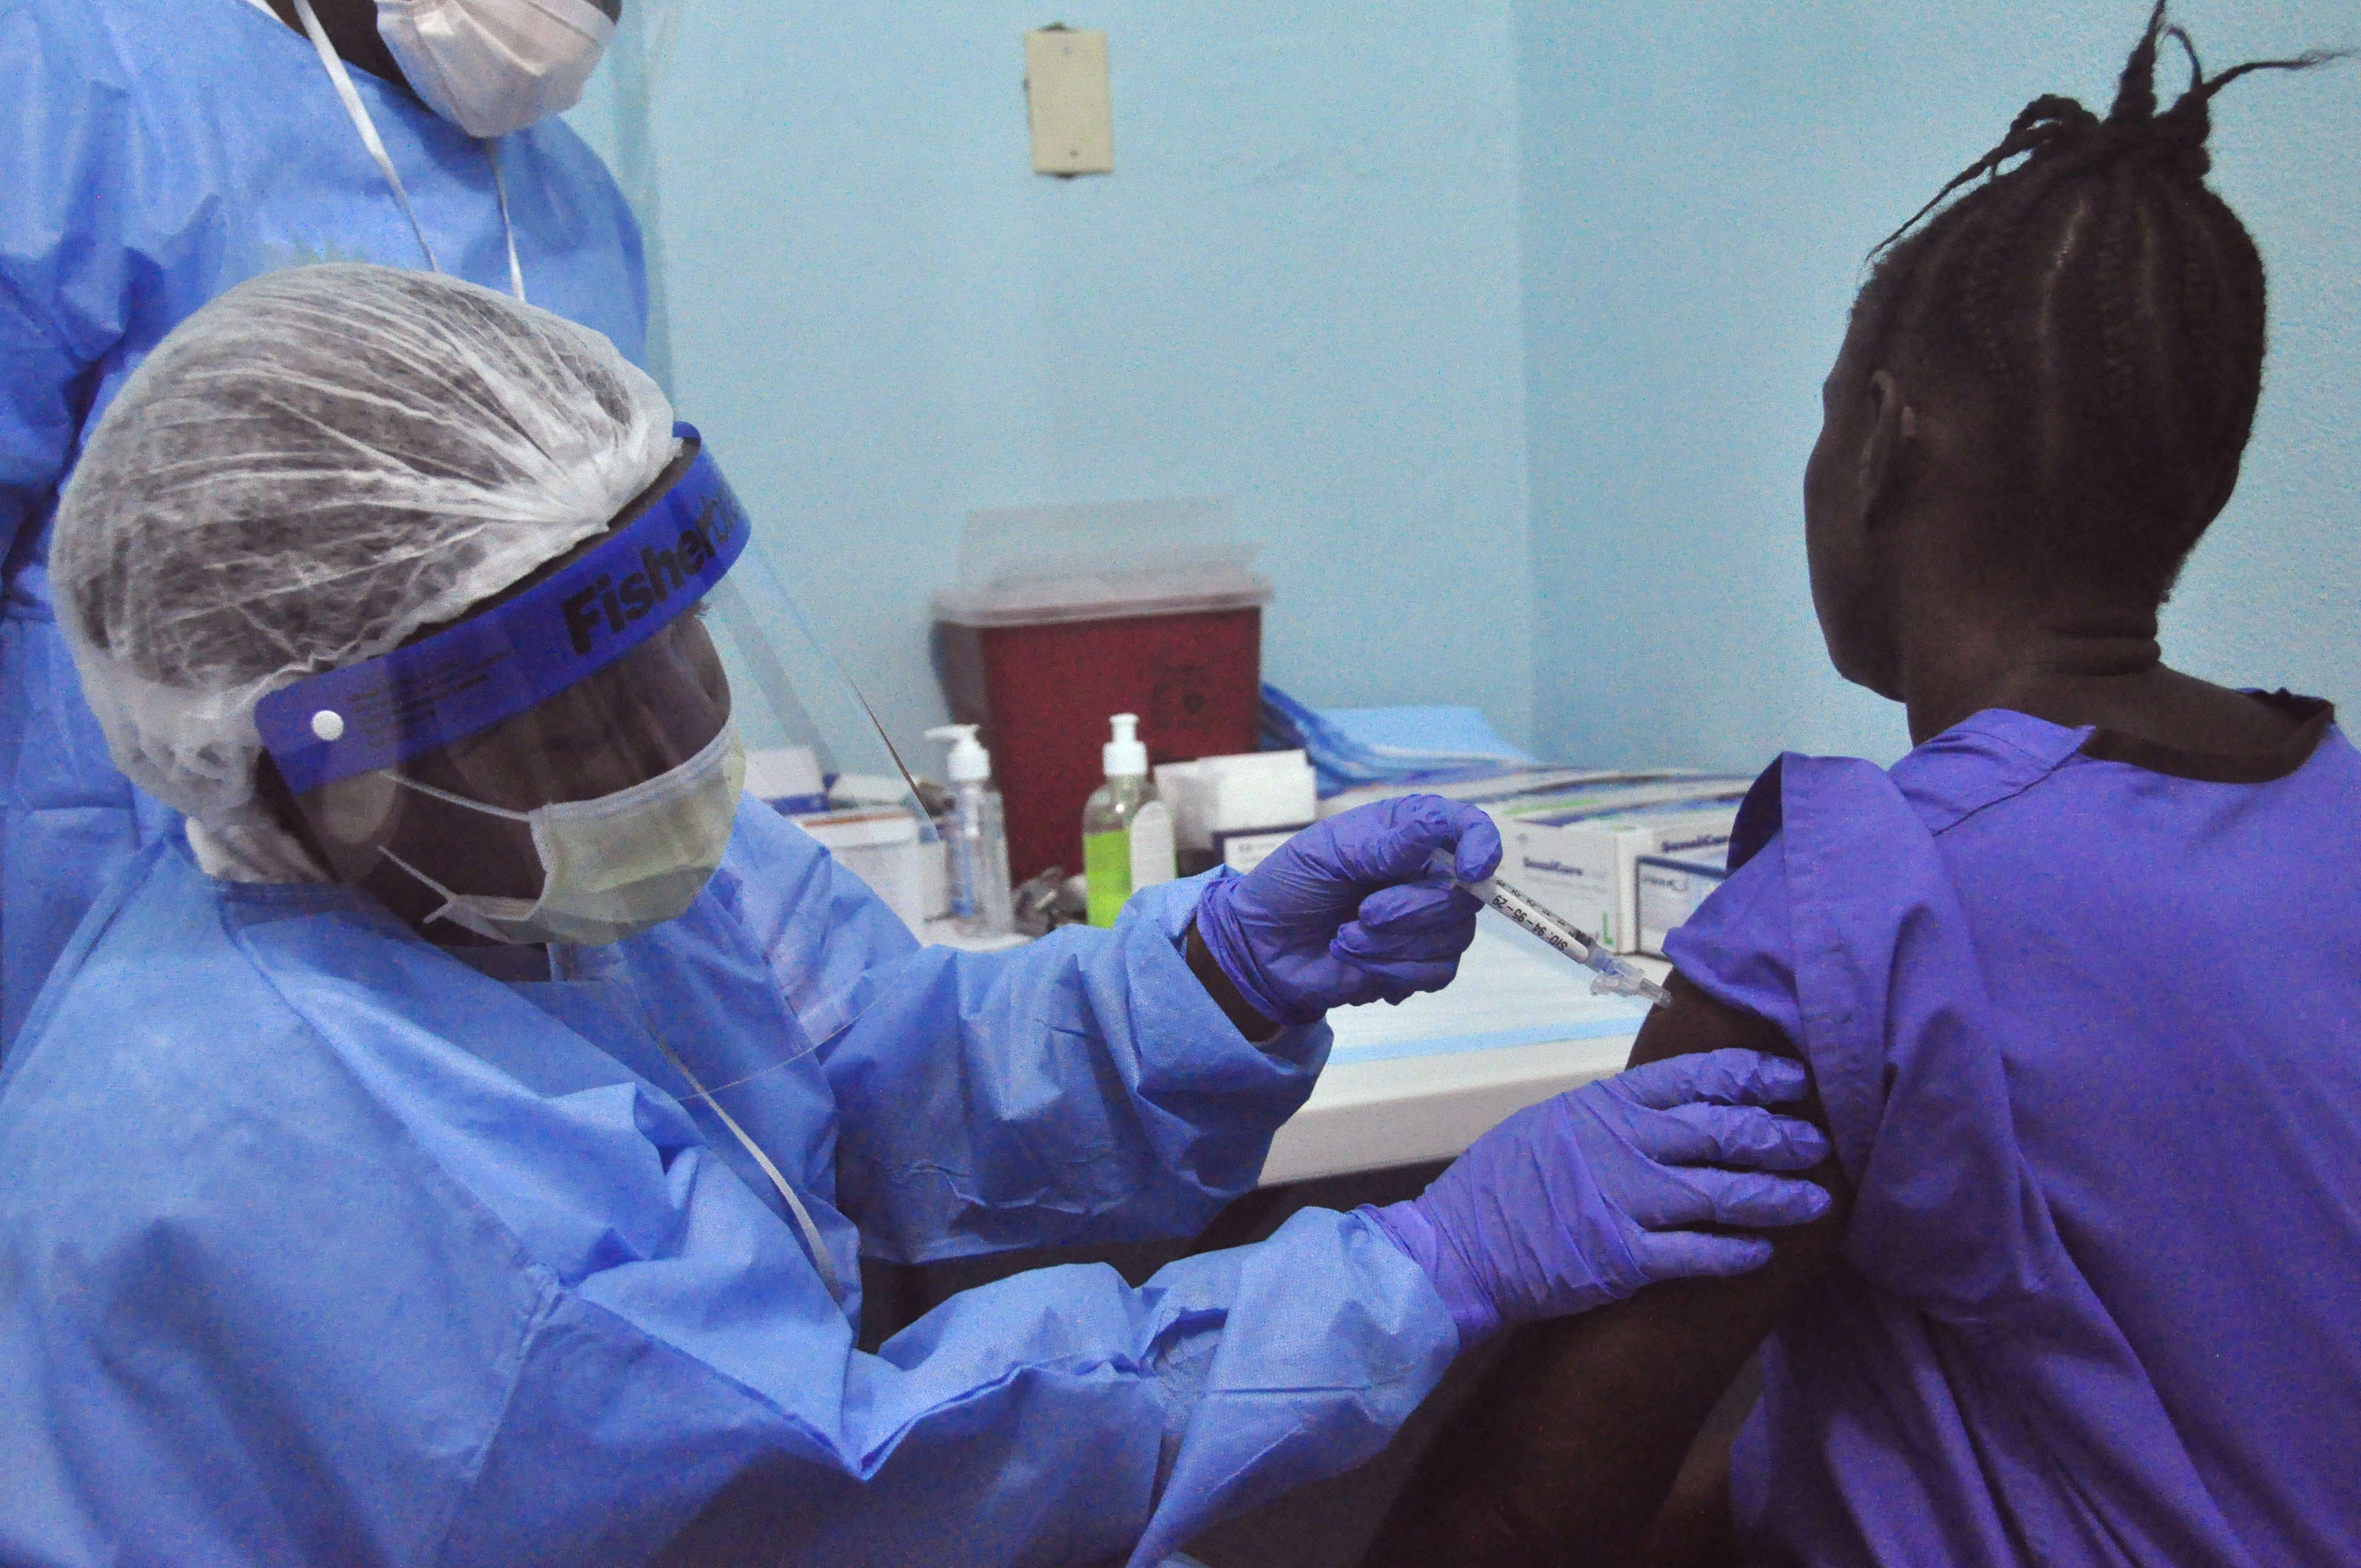 Suben ligeramente los casos de ébola, según la OMS